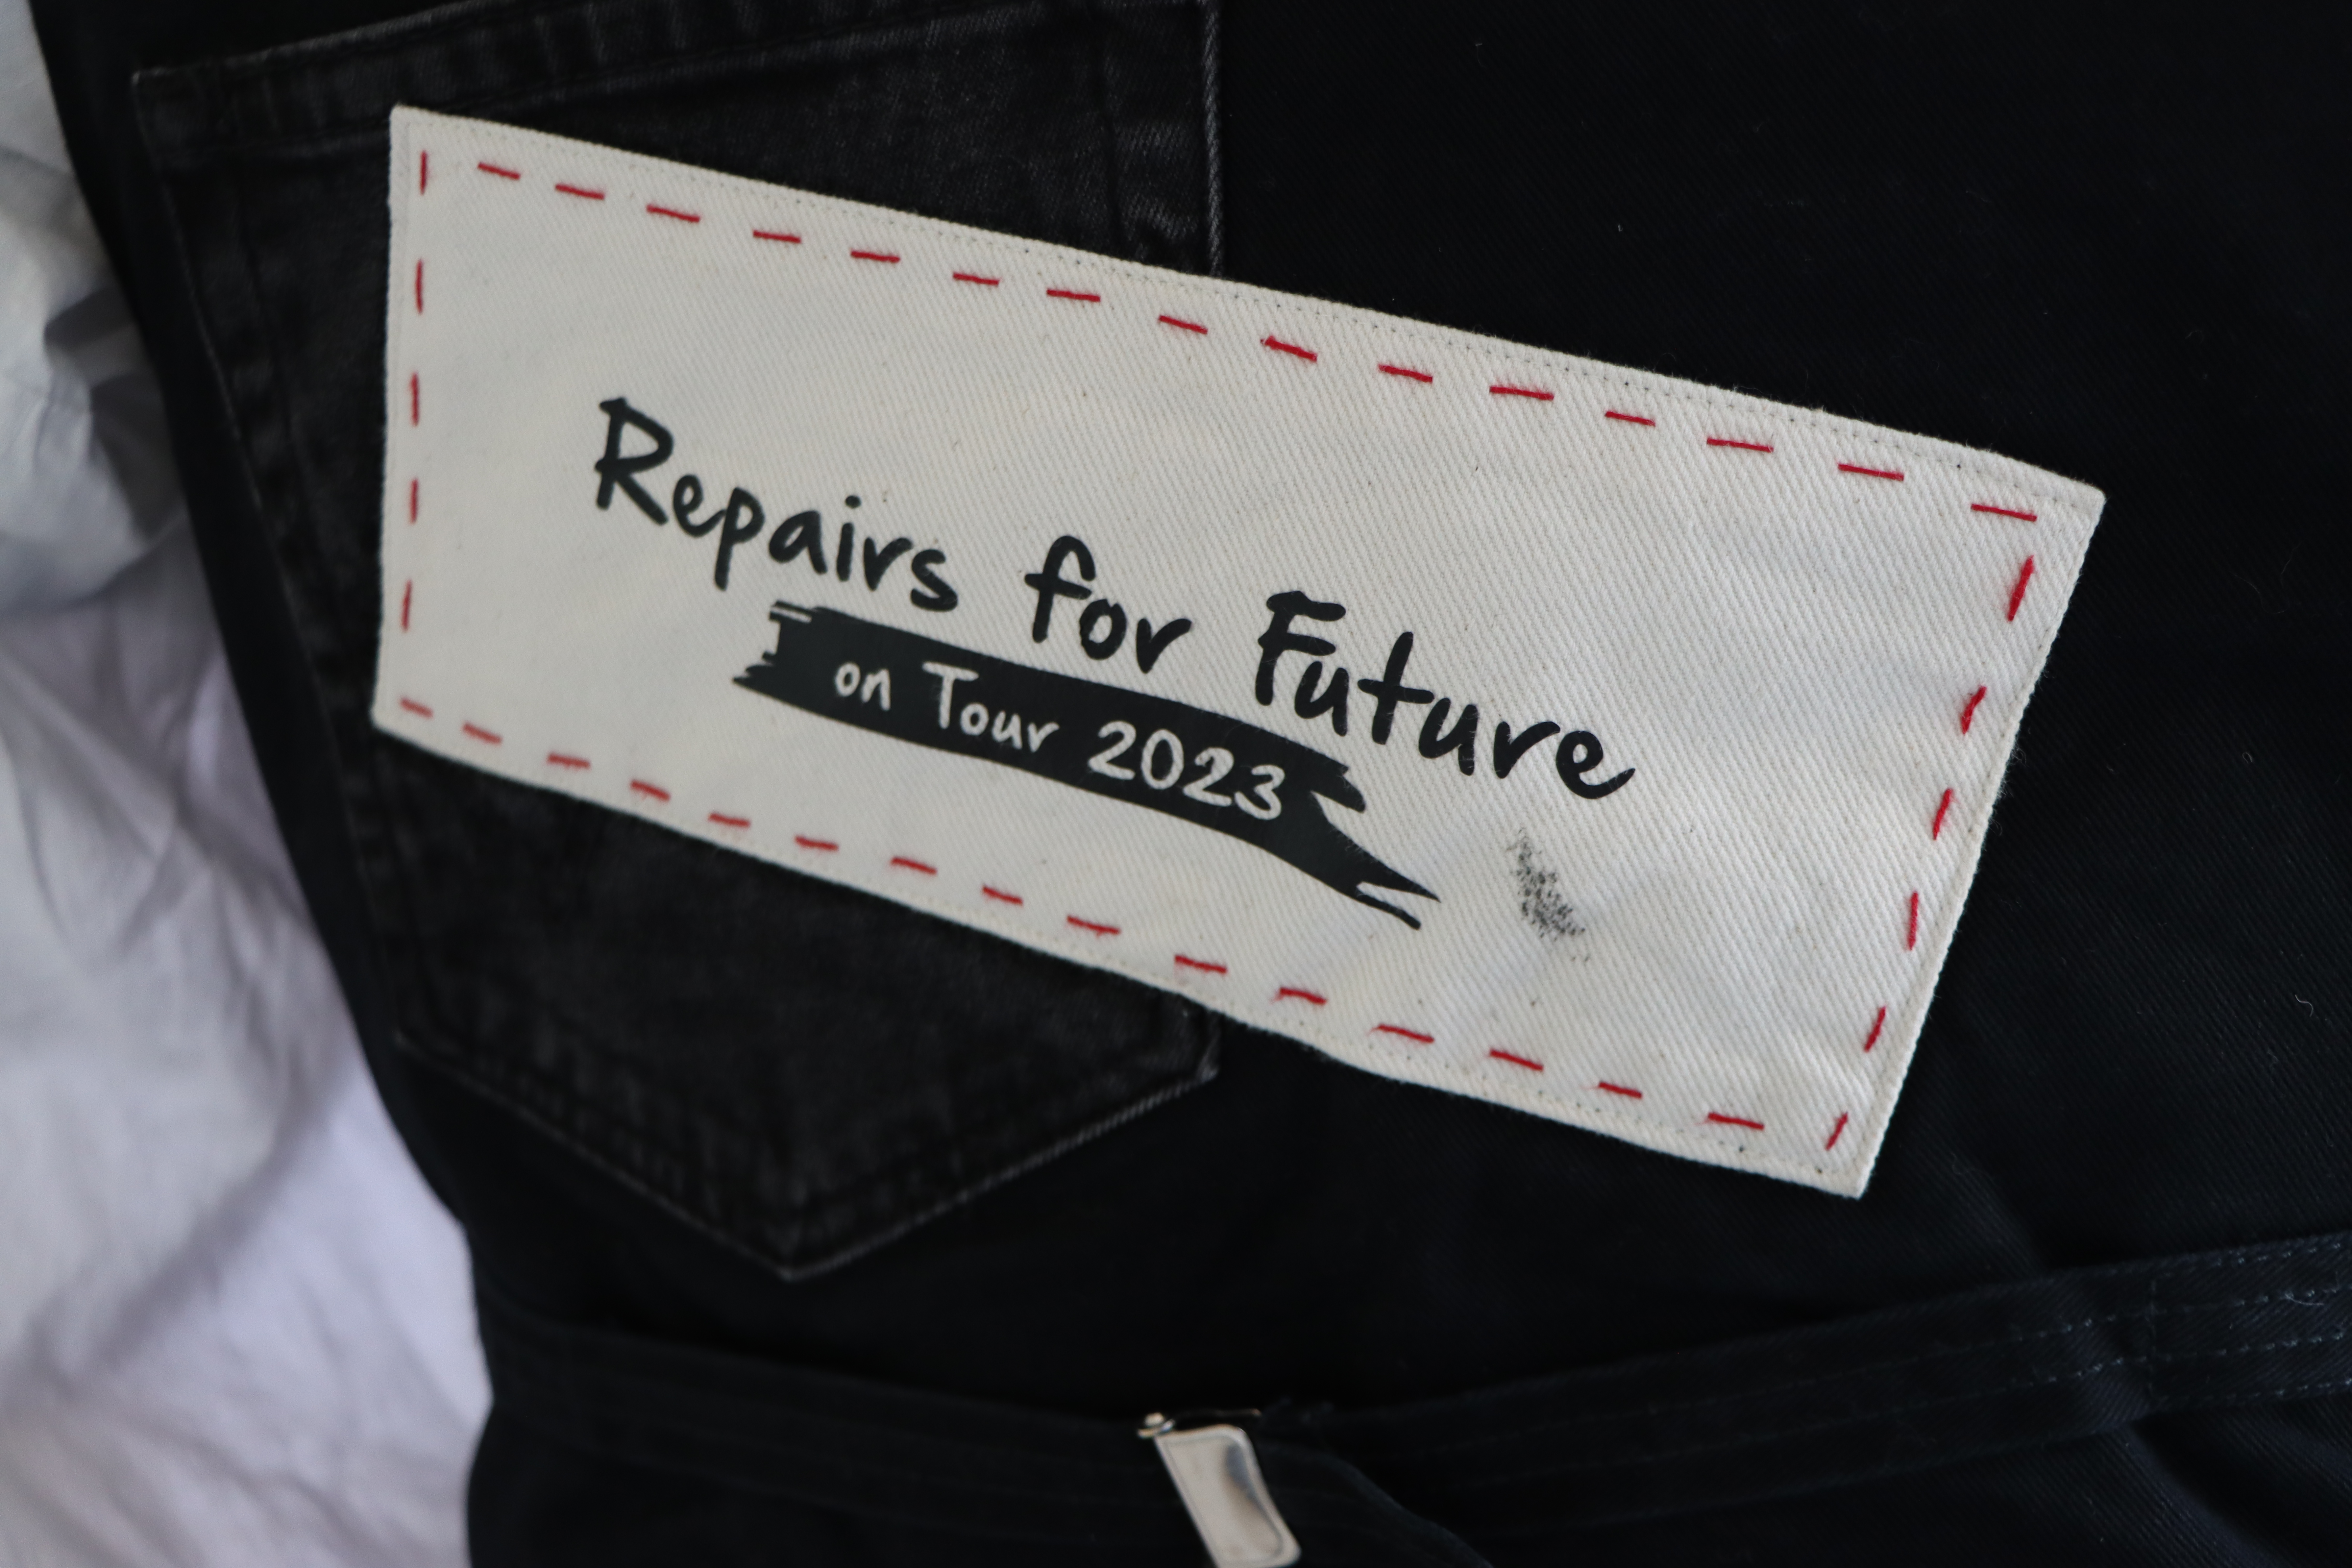 Repairs for future